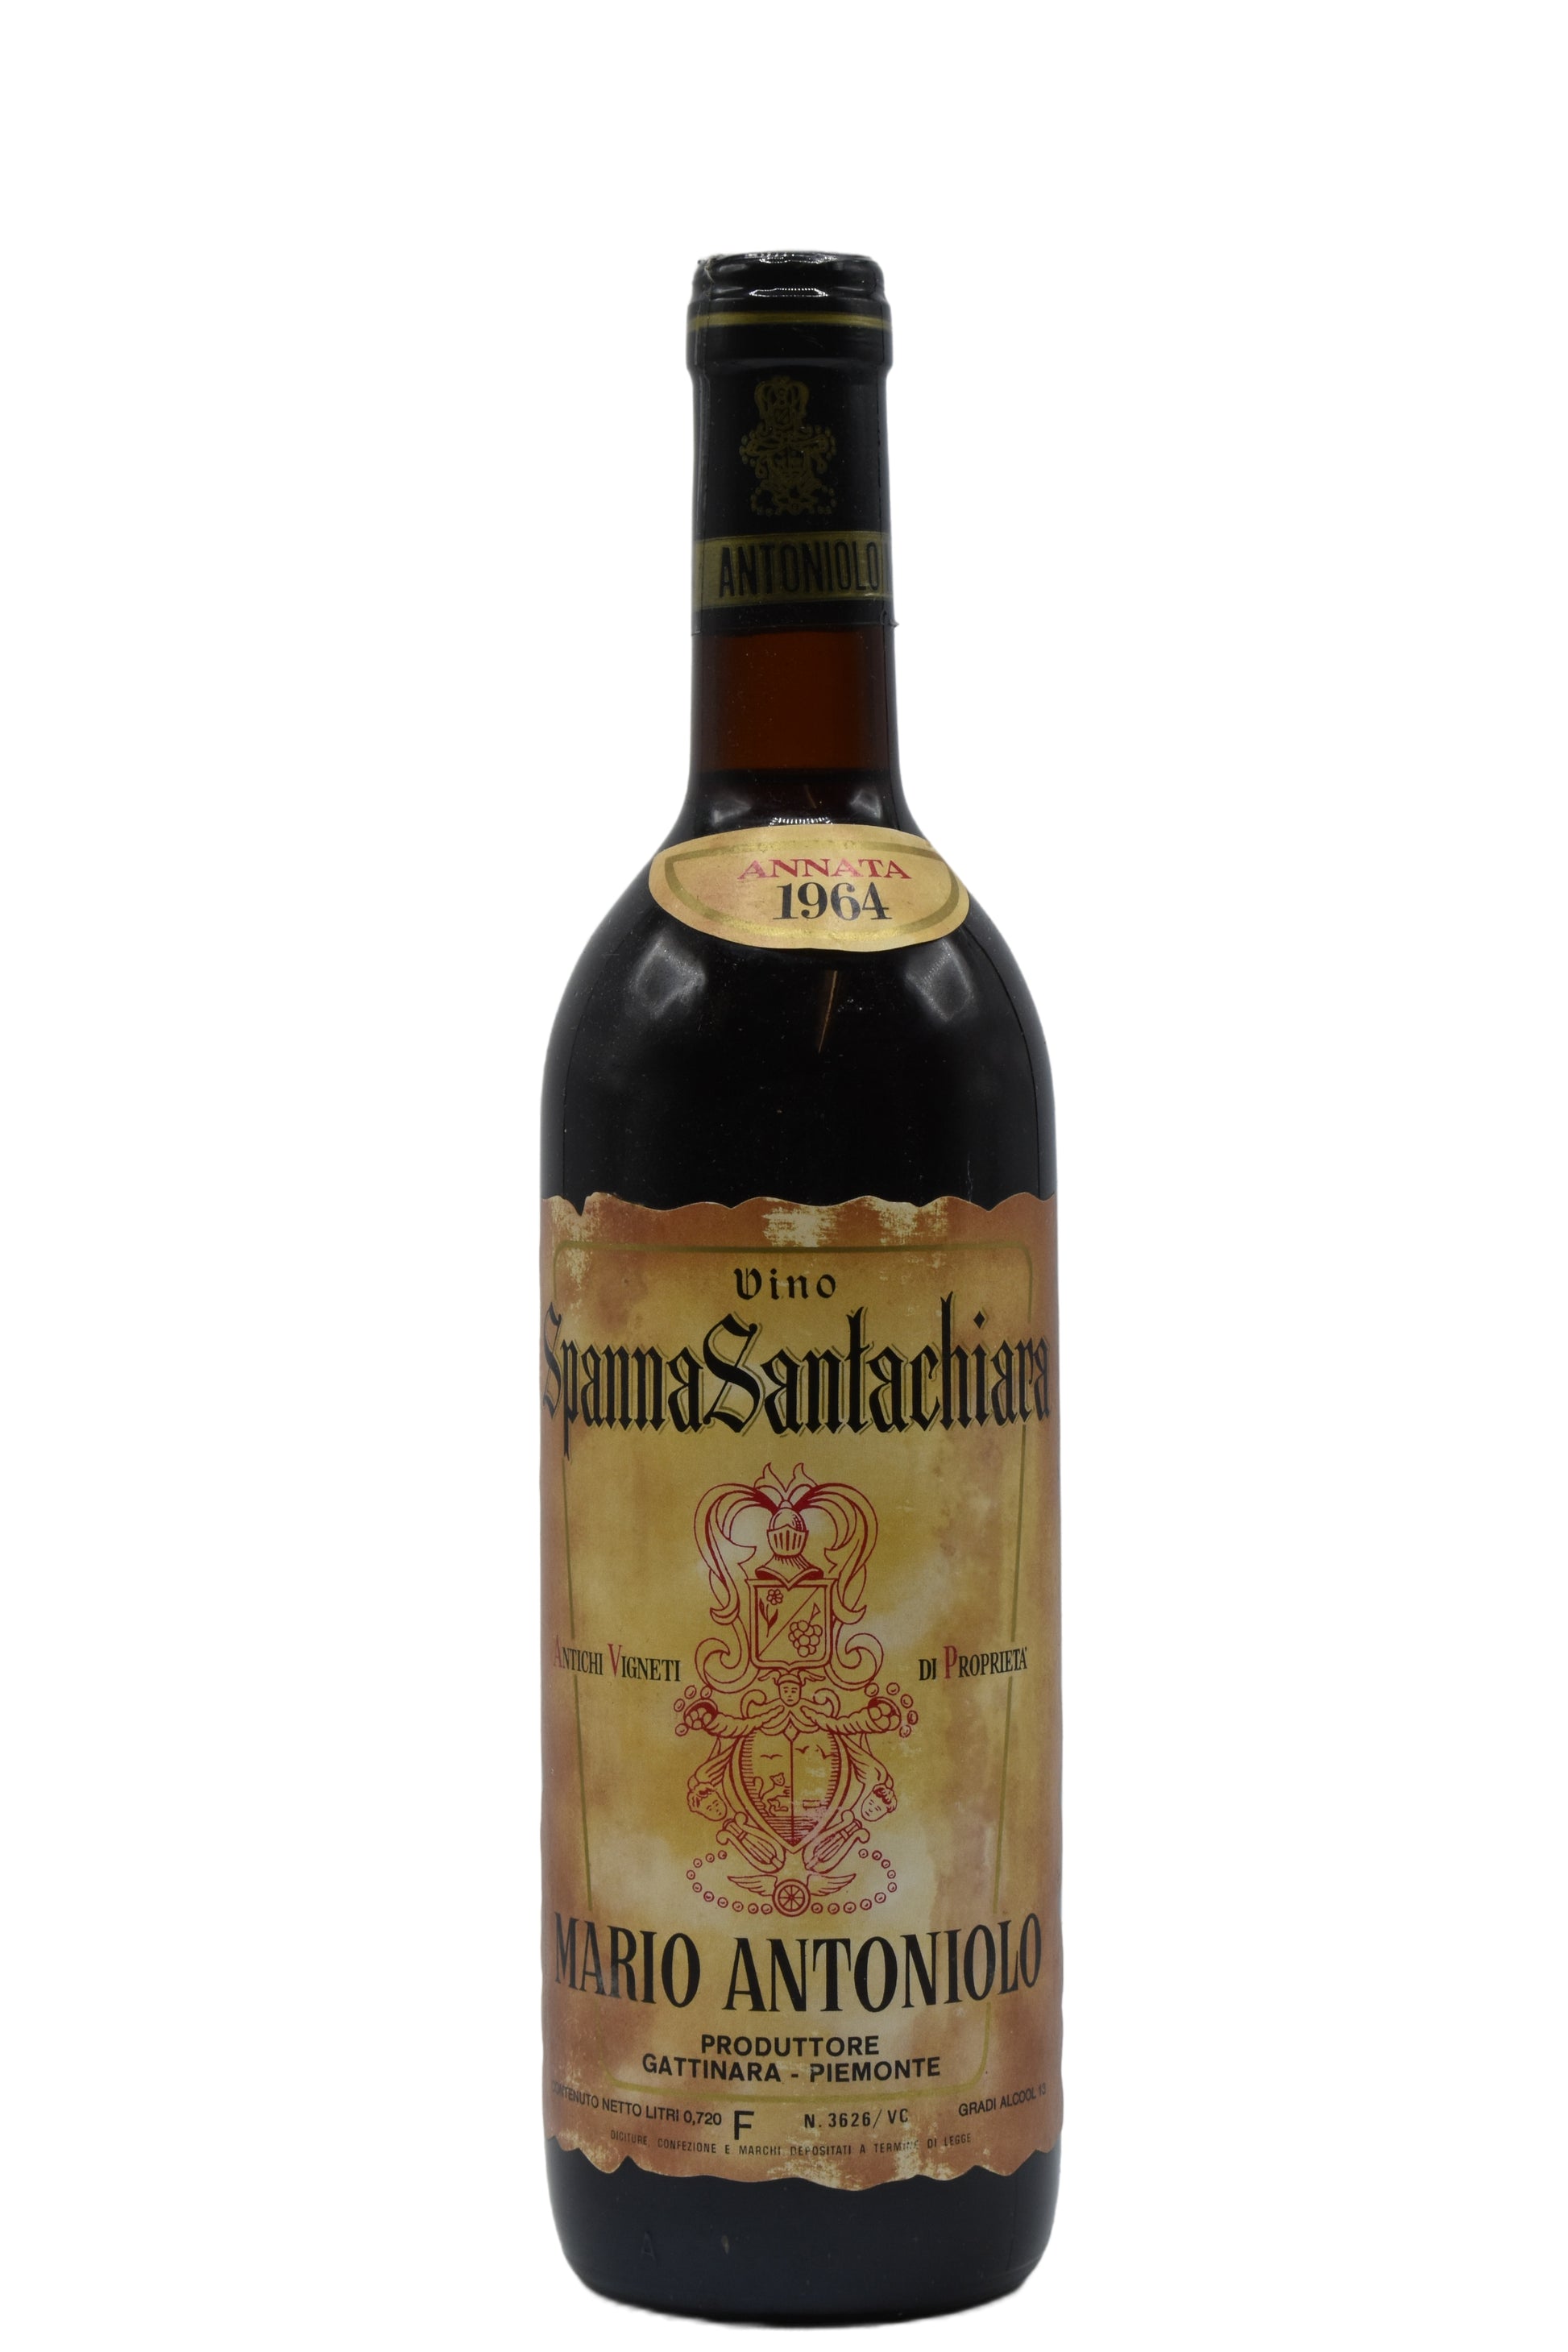 1964 Antoniolo, Spanna Santachiara 750ml - Walker Wine Co.